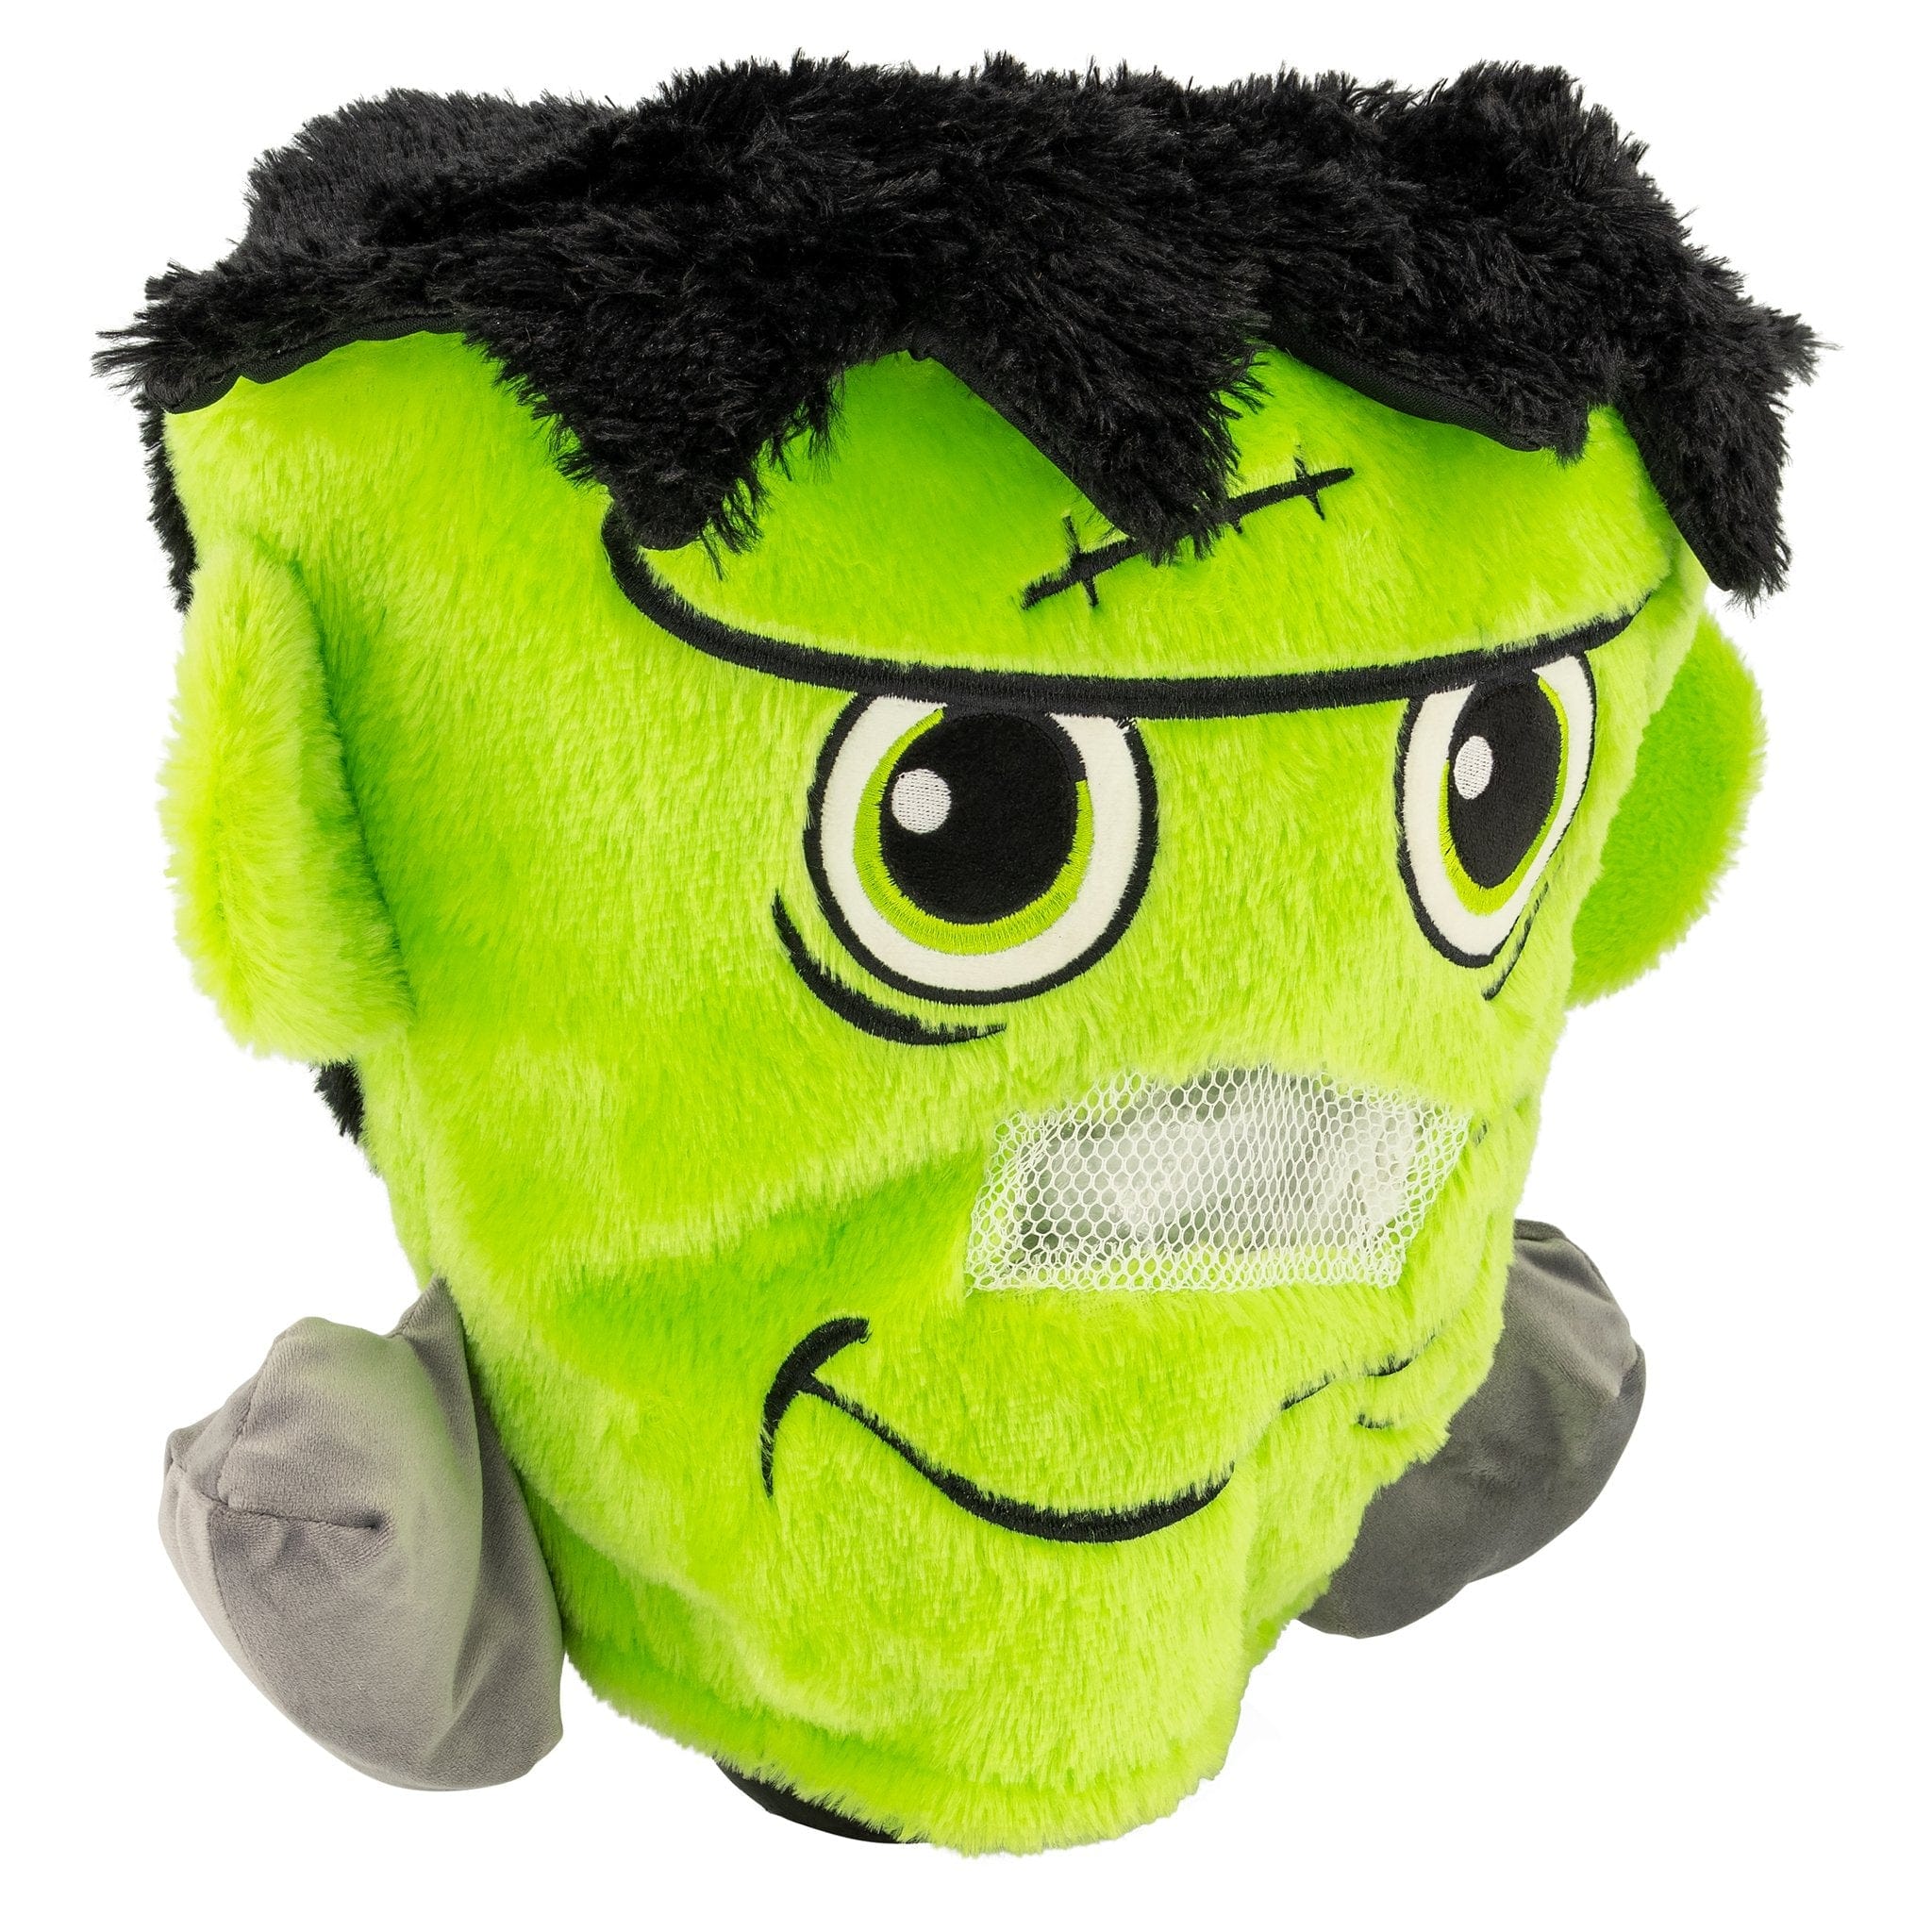 Halloween Plush Mask - Green Frankenstein's Monster 8715427049557